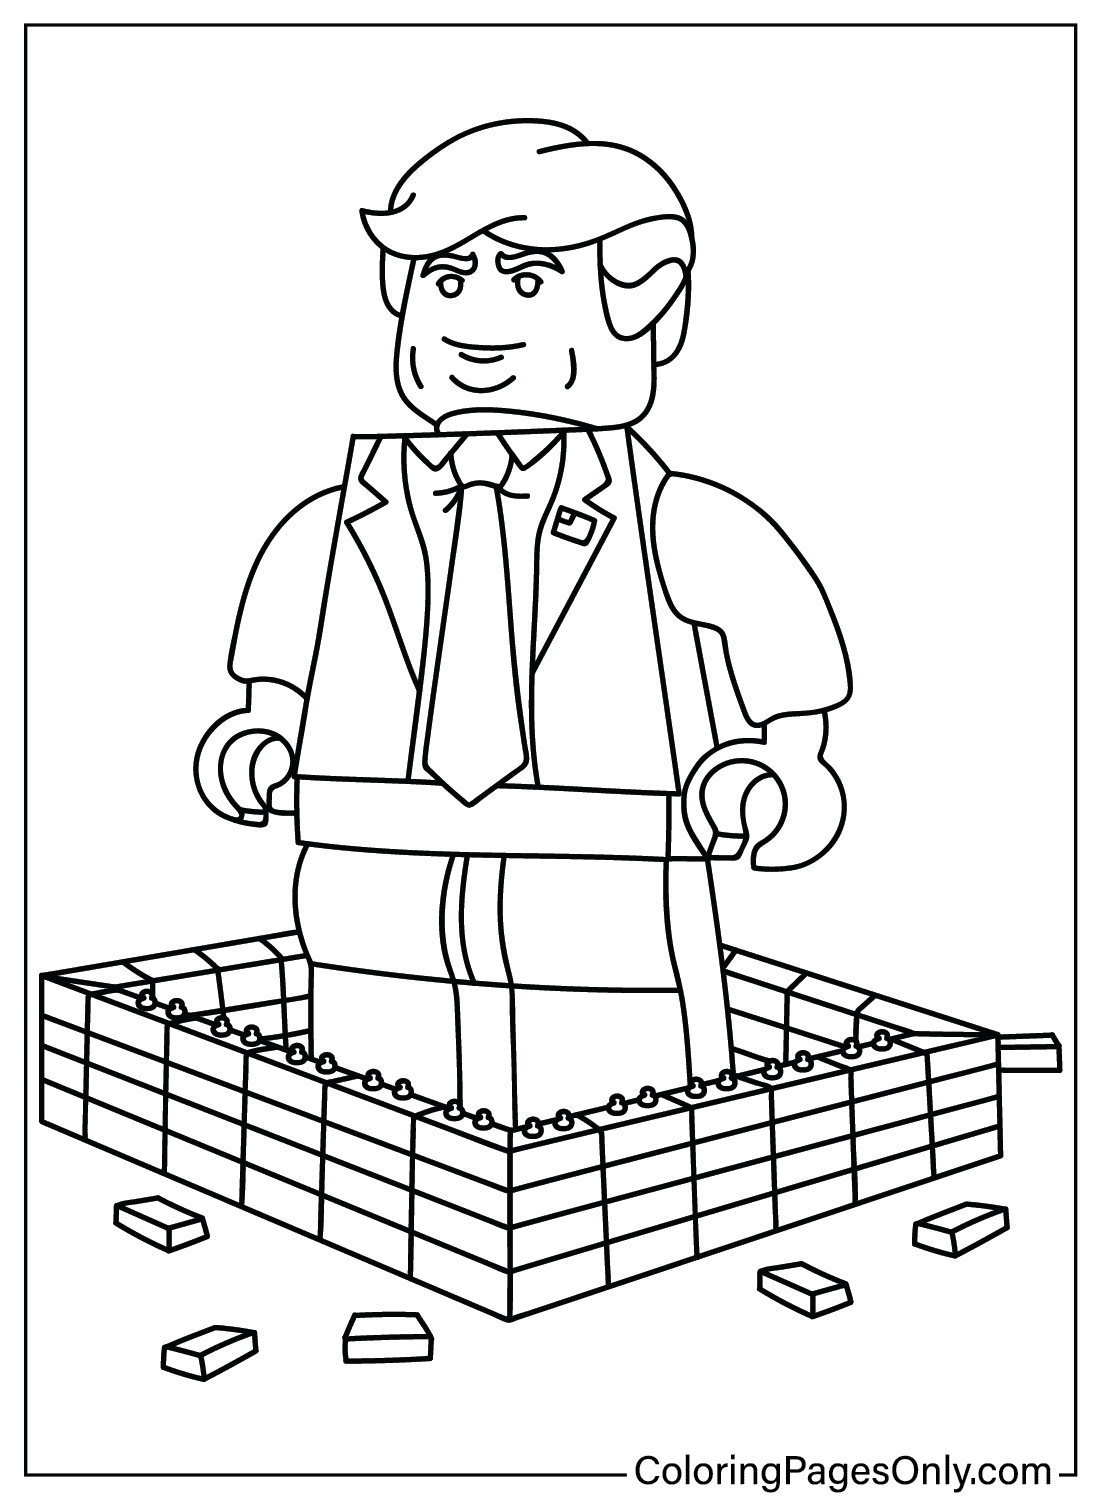 Página para colorir de Lego Donald Trump para imprimir